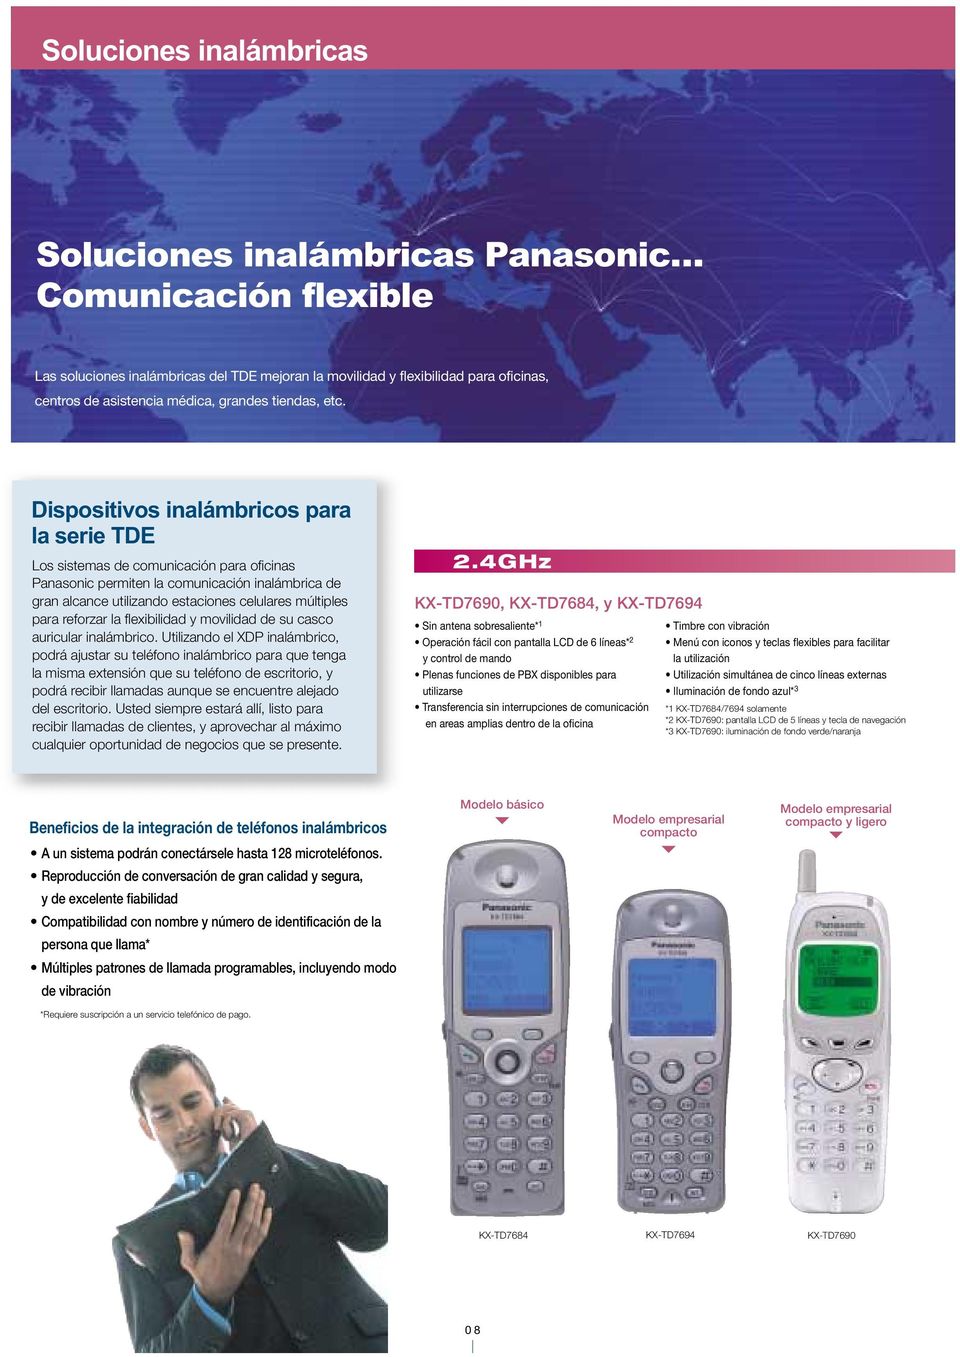 Dispositivos inalámbricos para la serie Los sistemas de comunicación para oficinas Panasonic permiten la comunicación inalámbrica de gran alcance utilizando estaciones celulares múltiples para